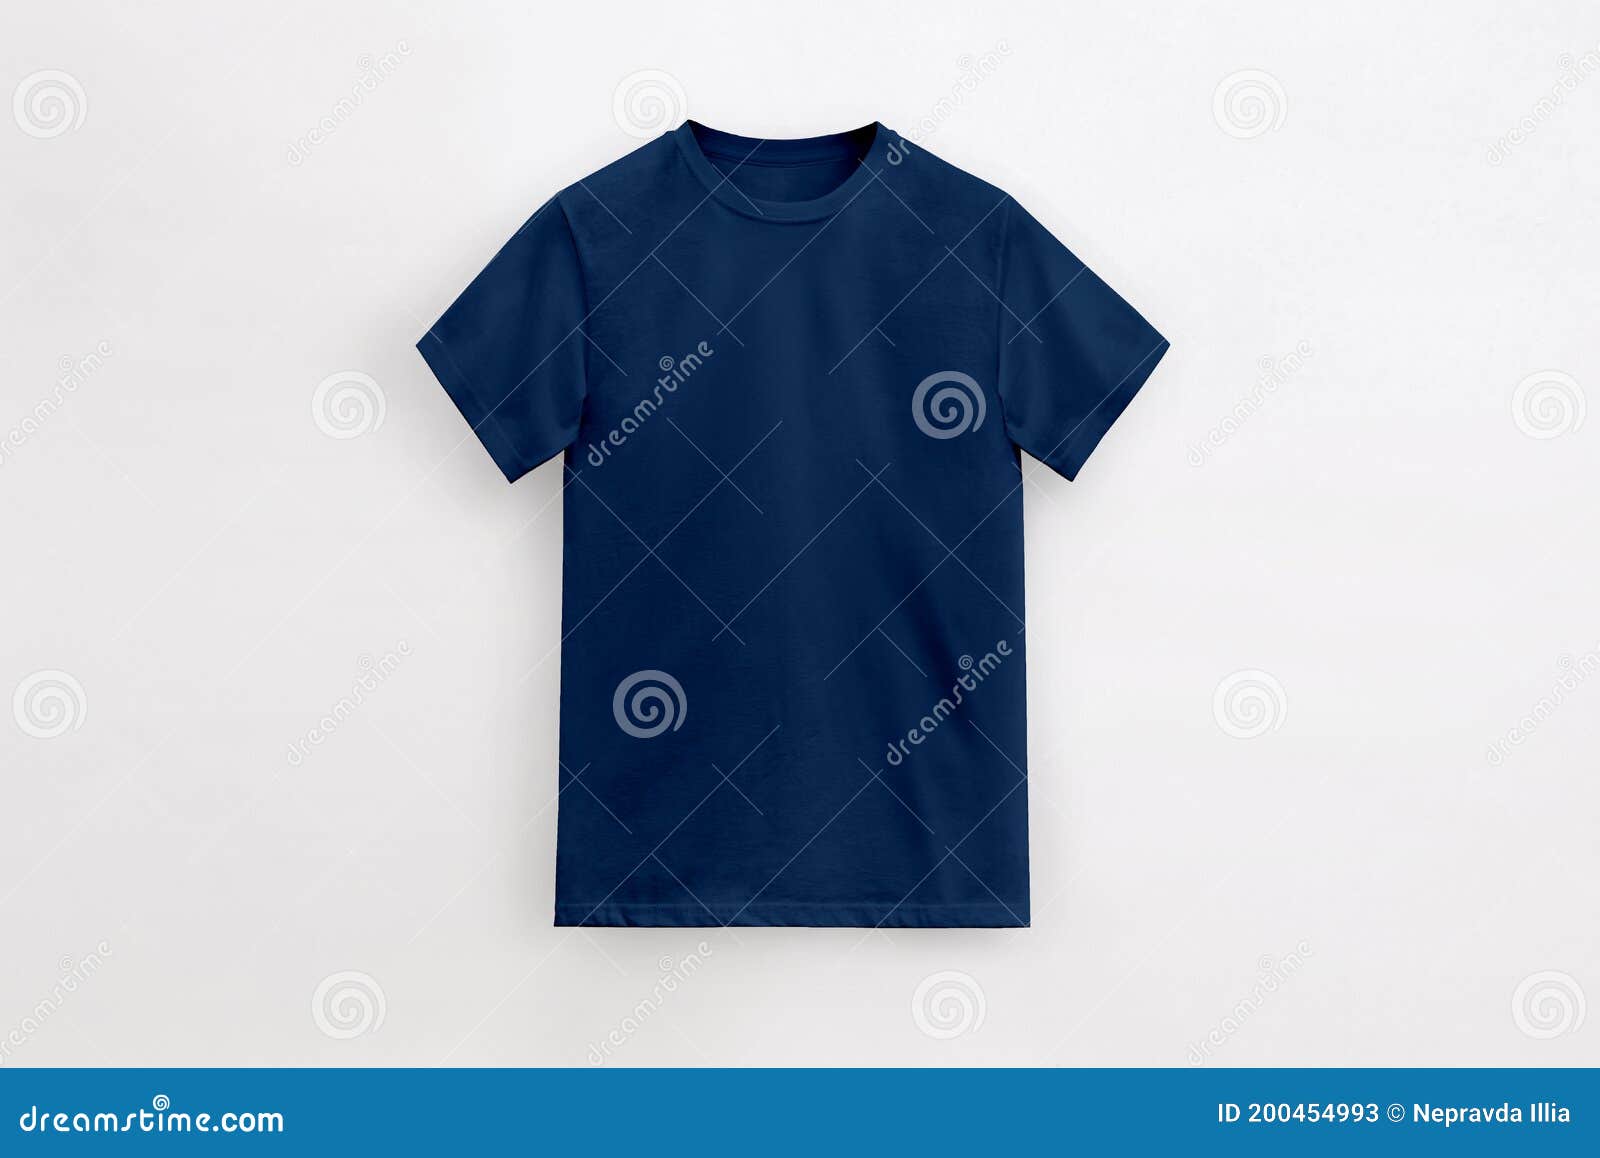 Round Neck Basic Deep Navy Blue T-shirt Stock Image - Image of elastic ...